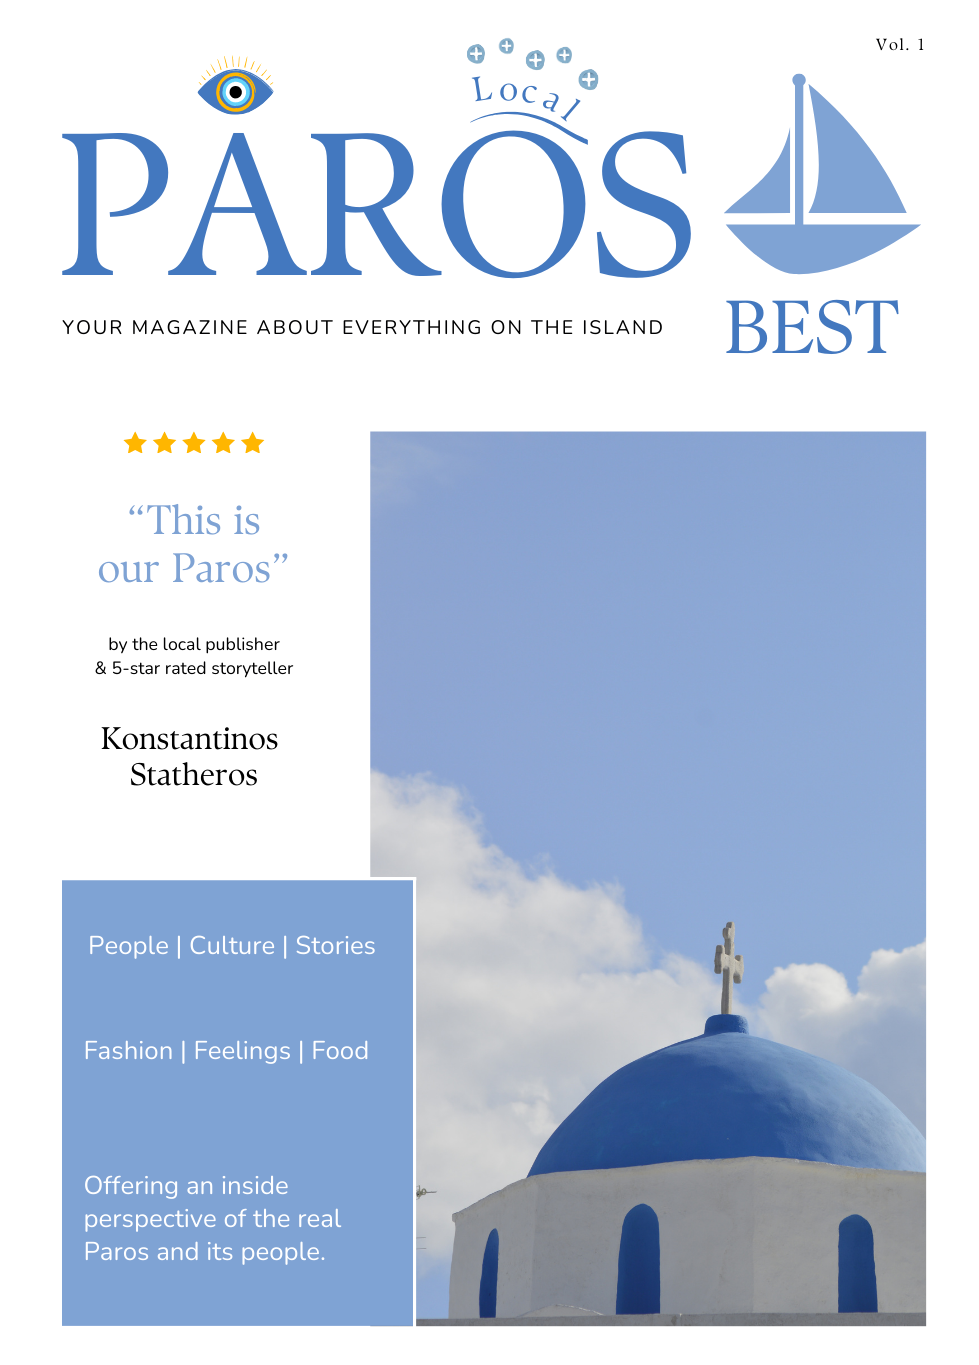 ParosBest Magazine